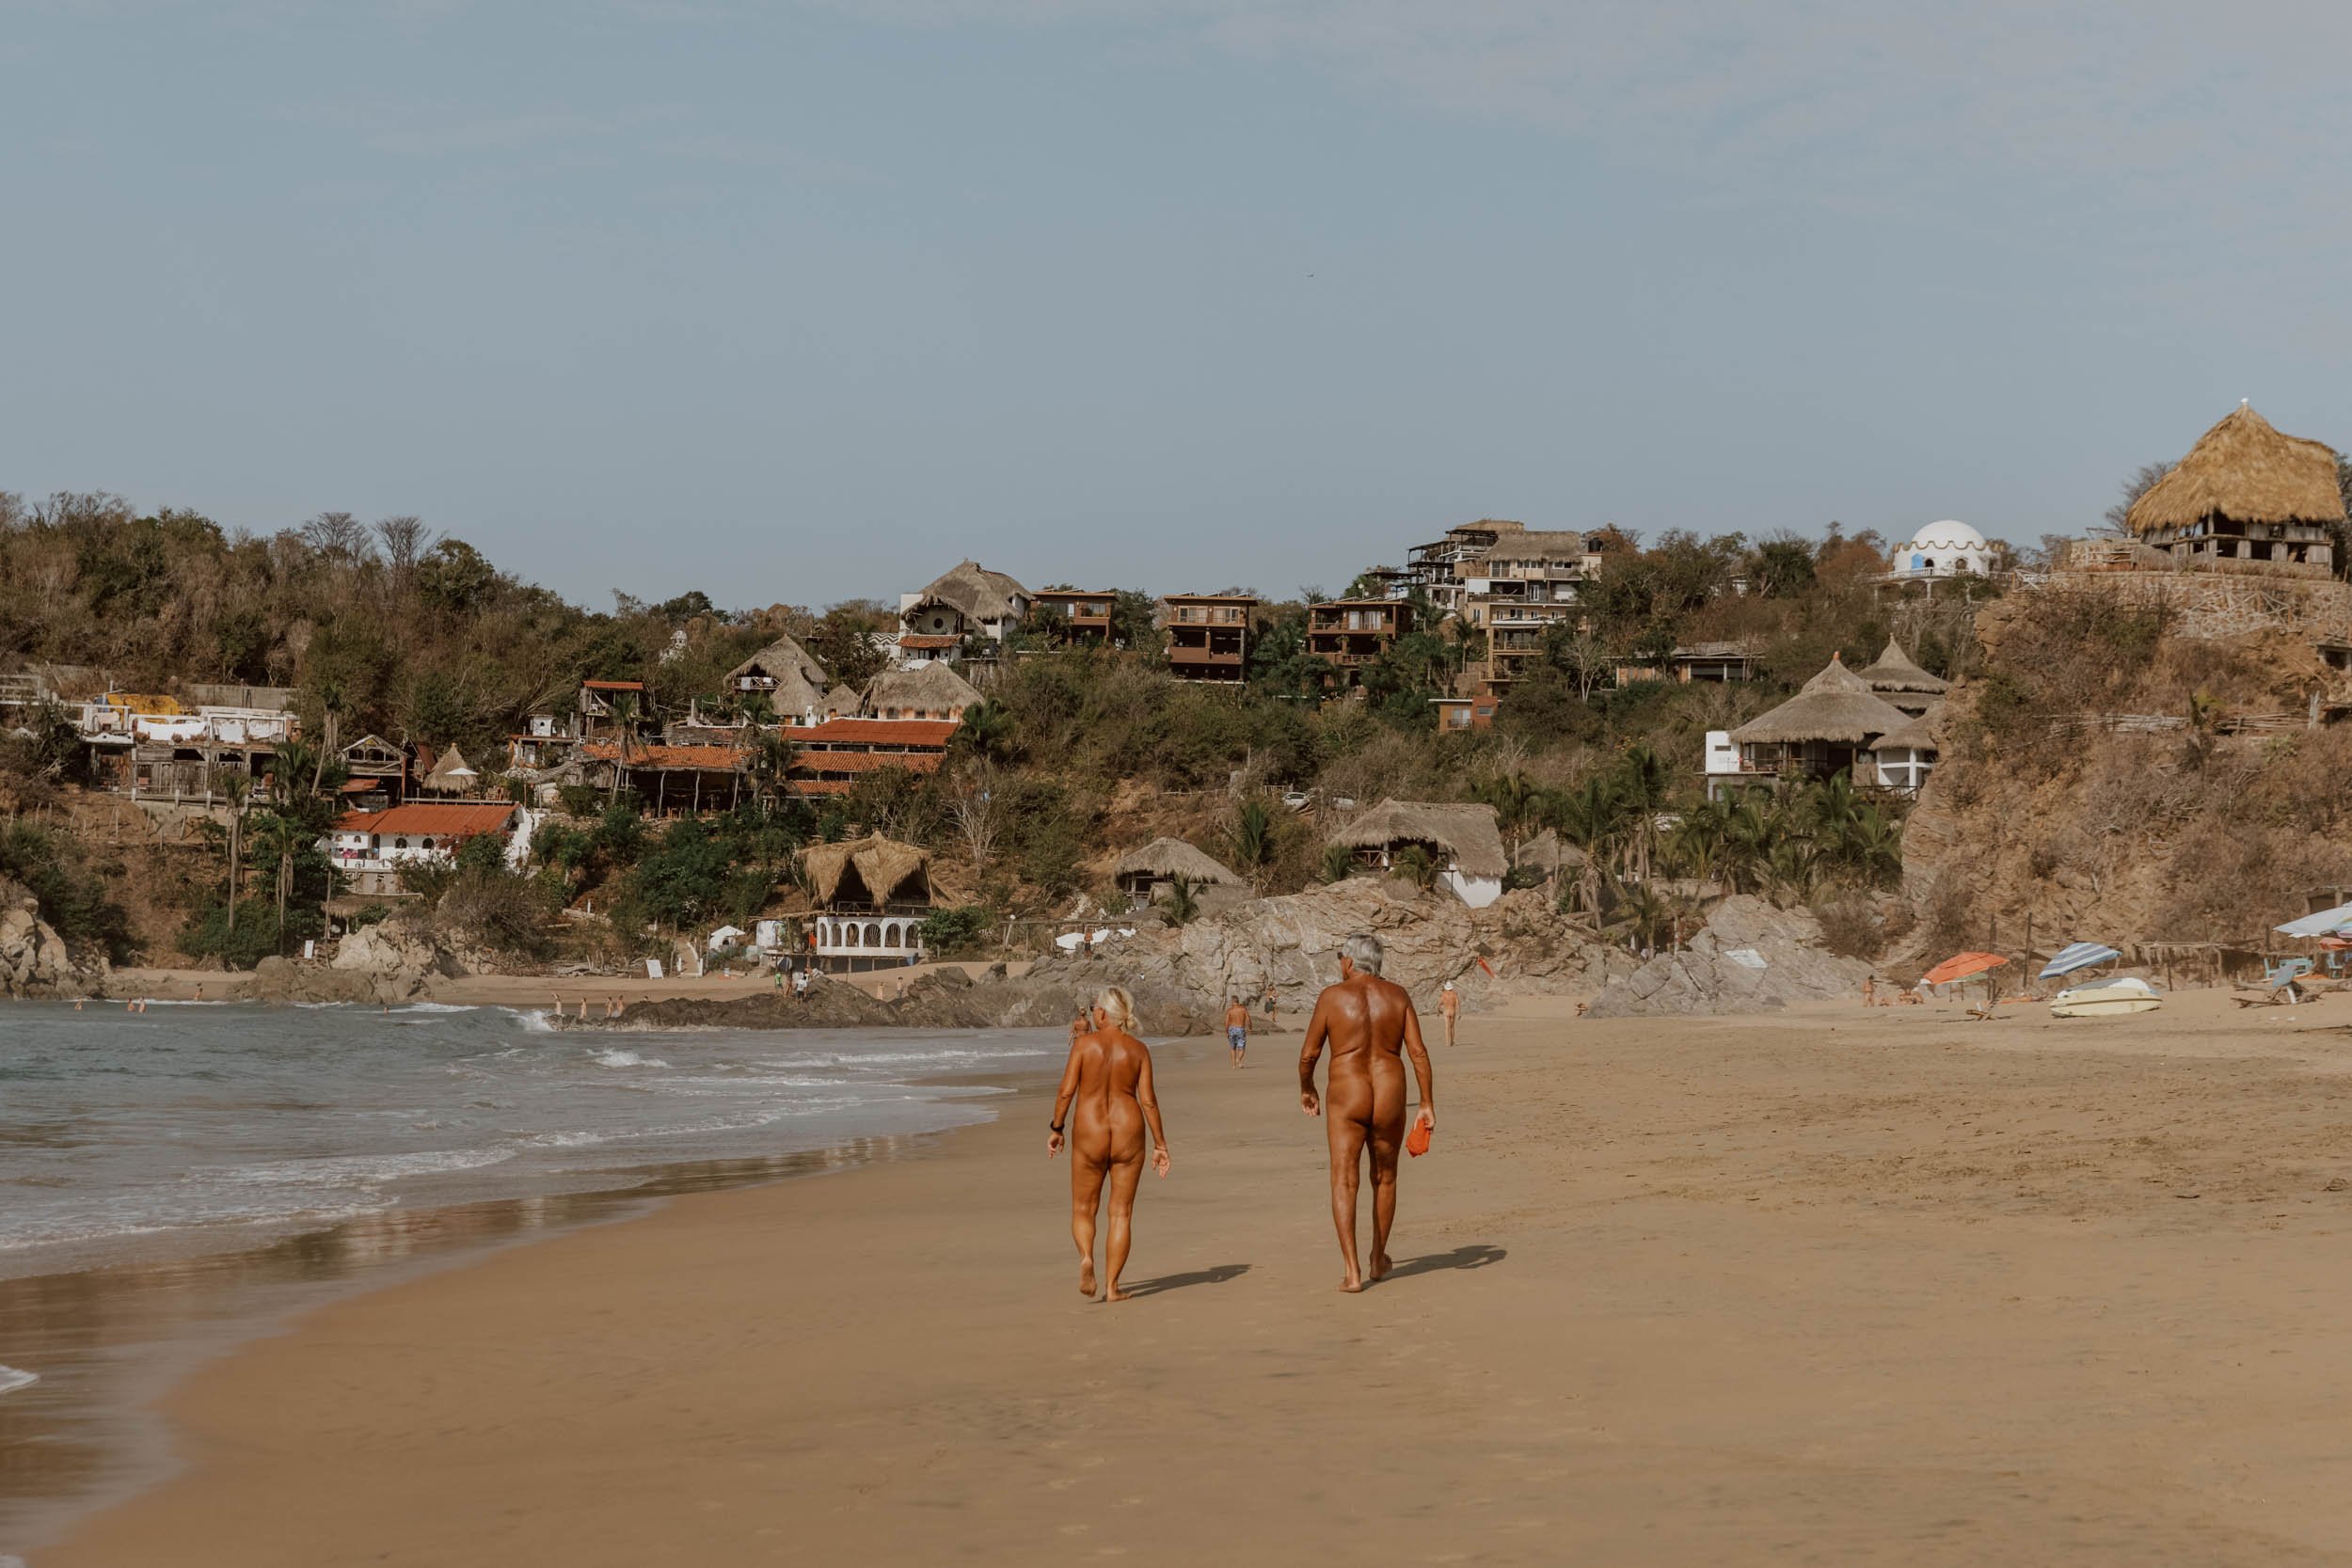 citlali romero add nudist beach cancun mexico photo